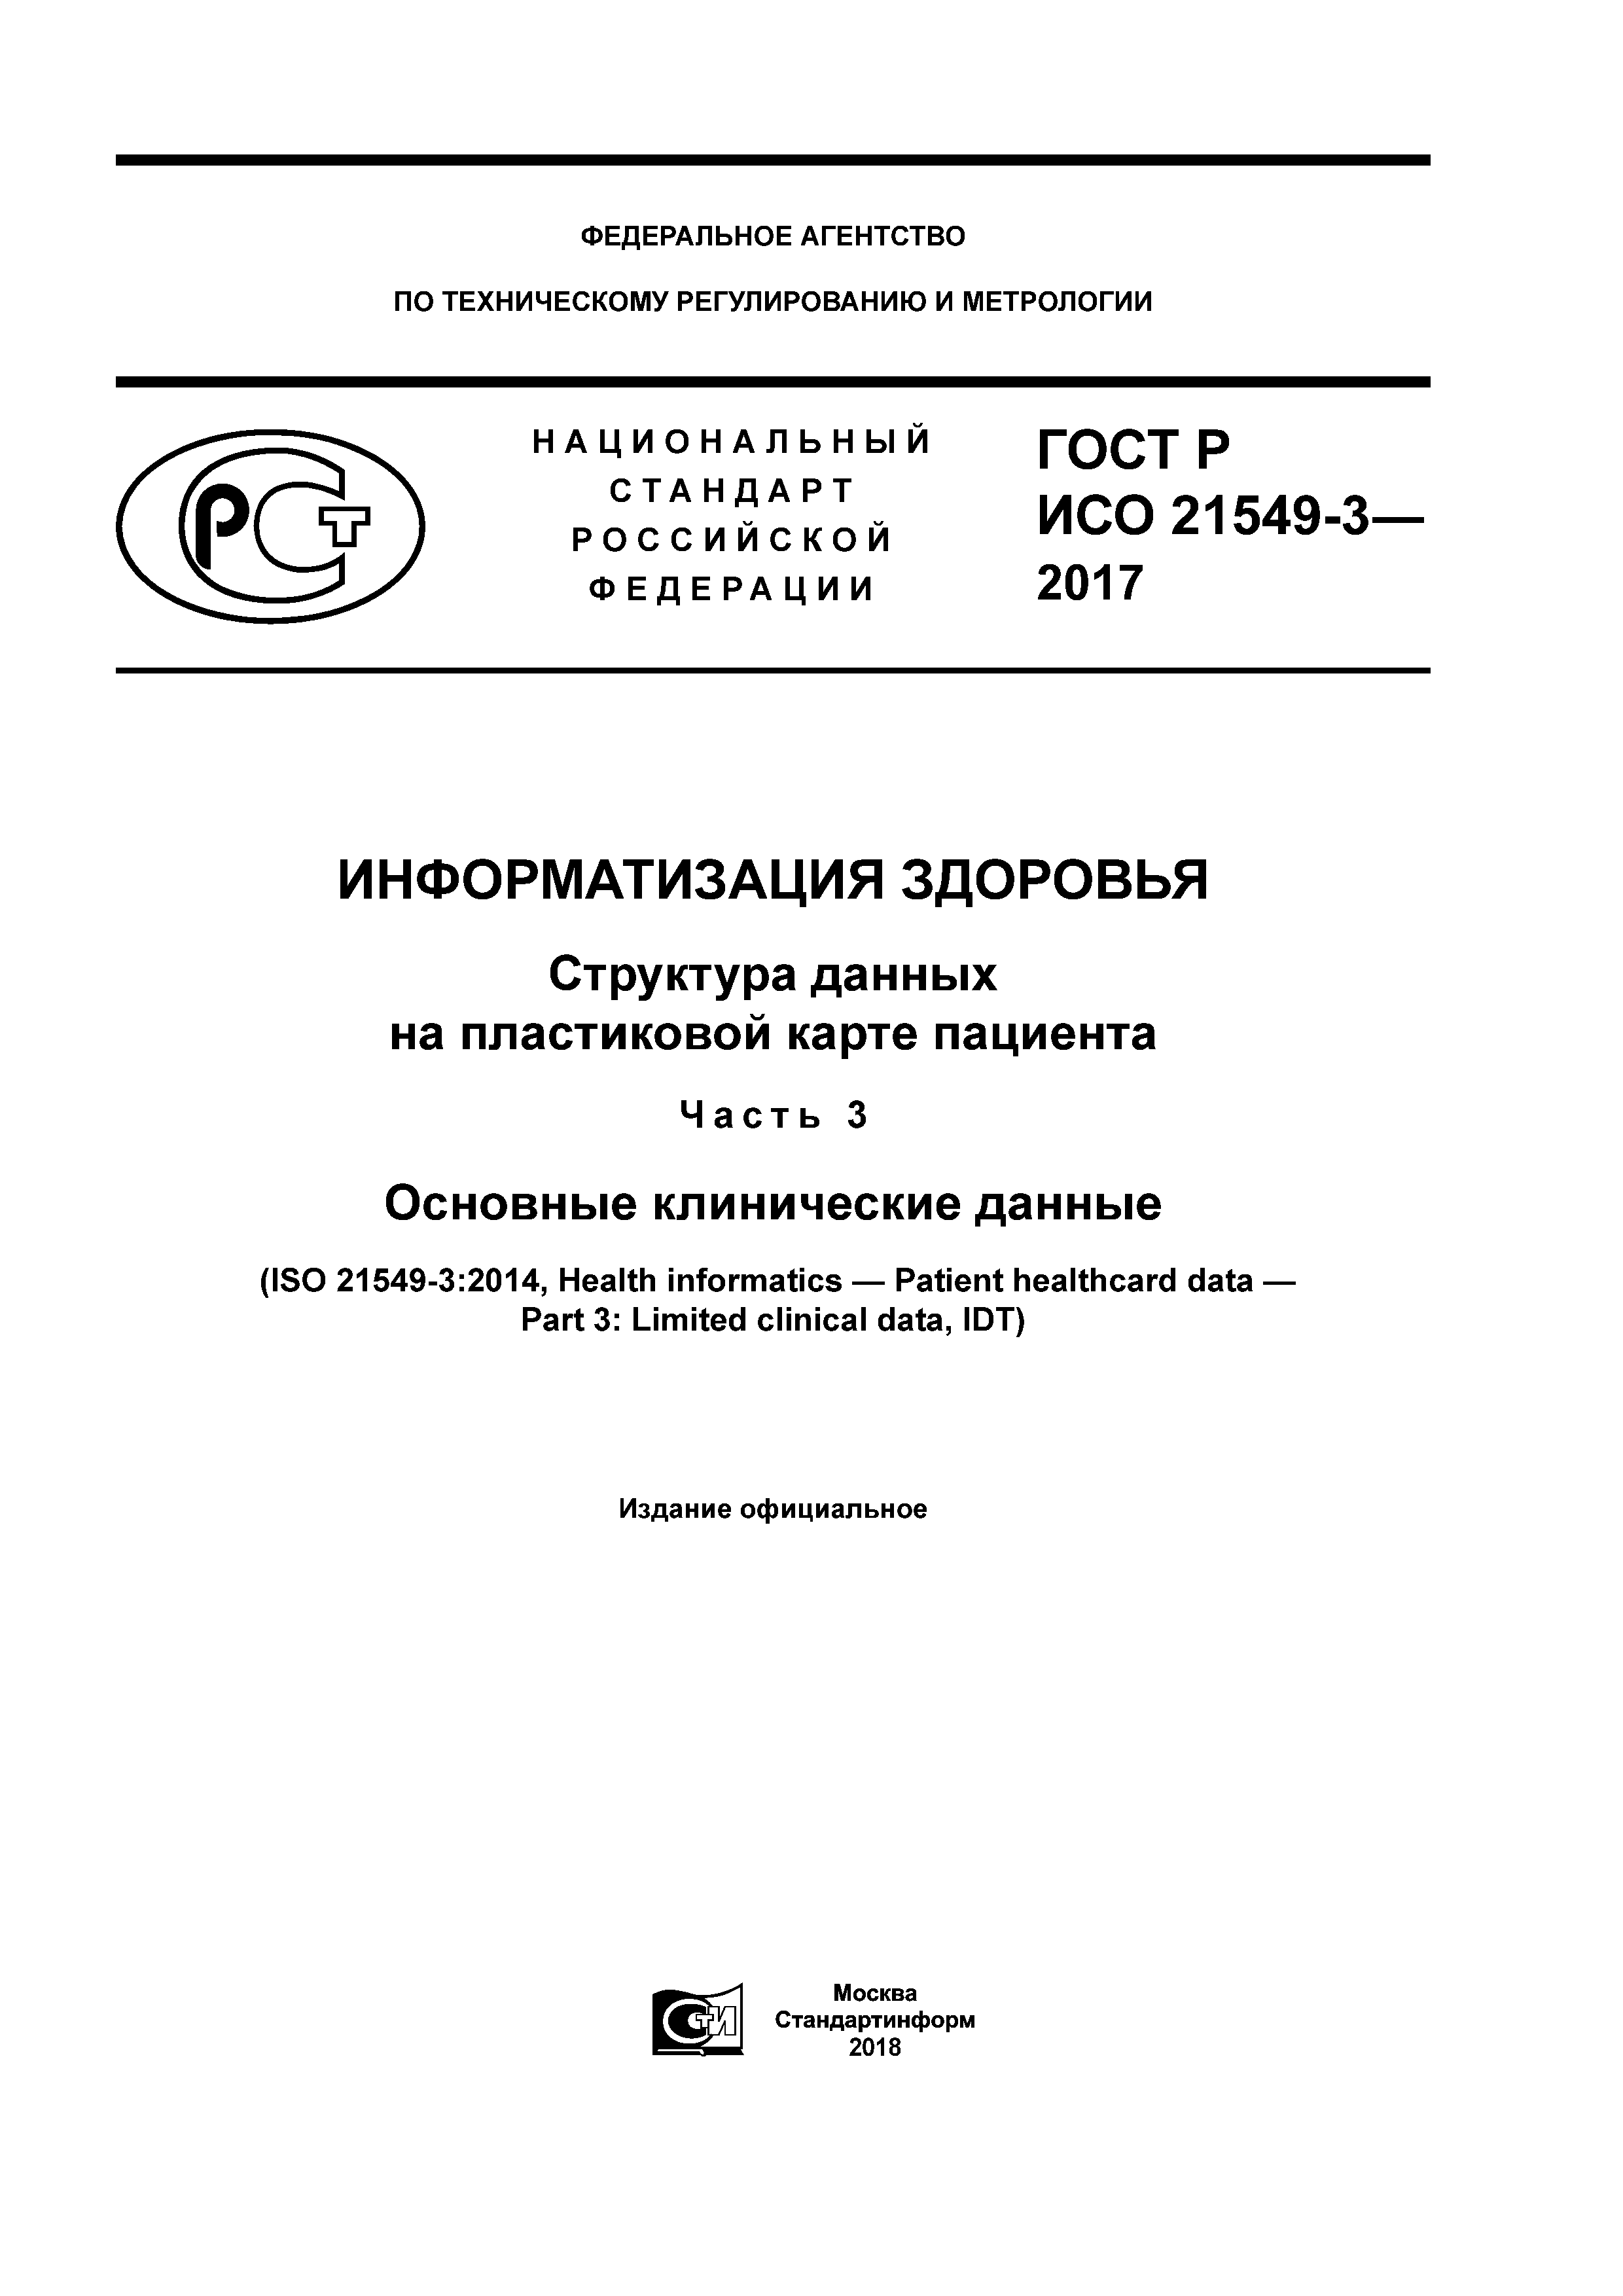 ГОСТ Р ИСО 21549-3-2017